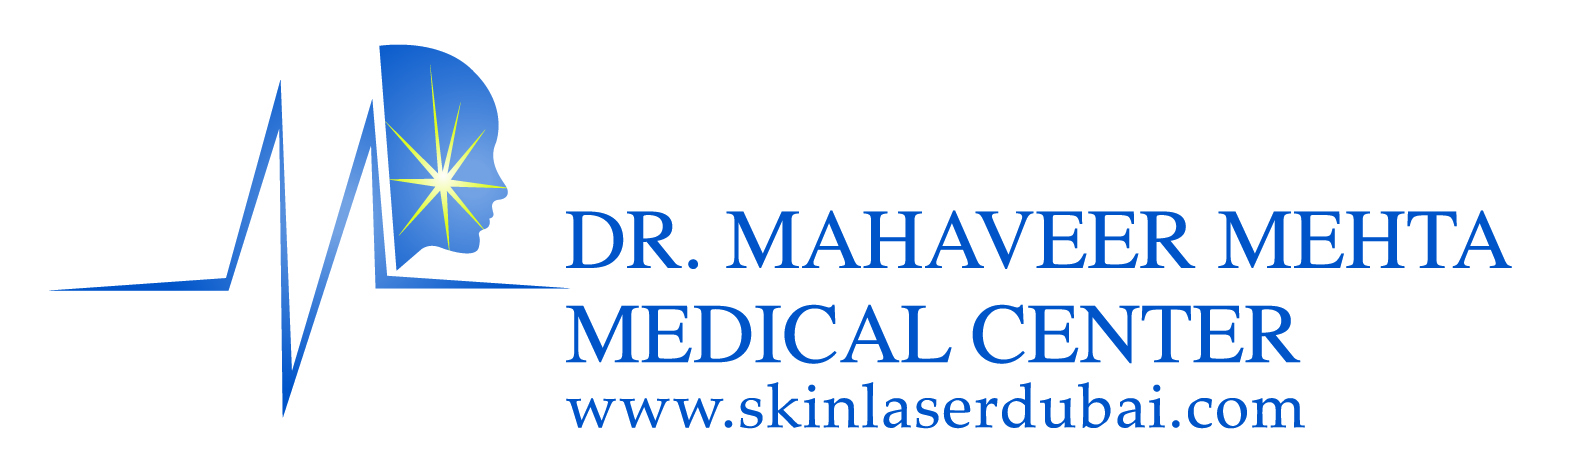 Dr. Mahaveer Mehta Medical Center 